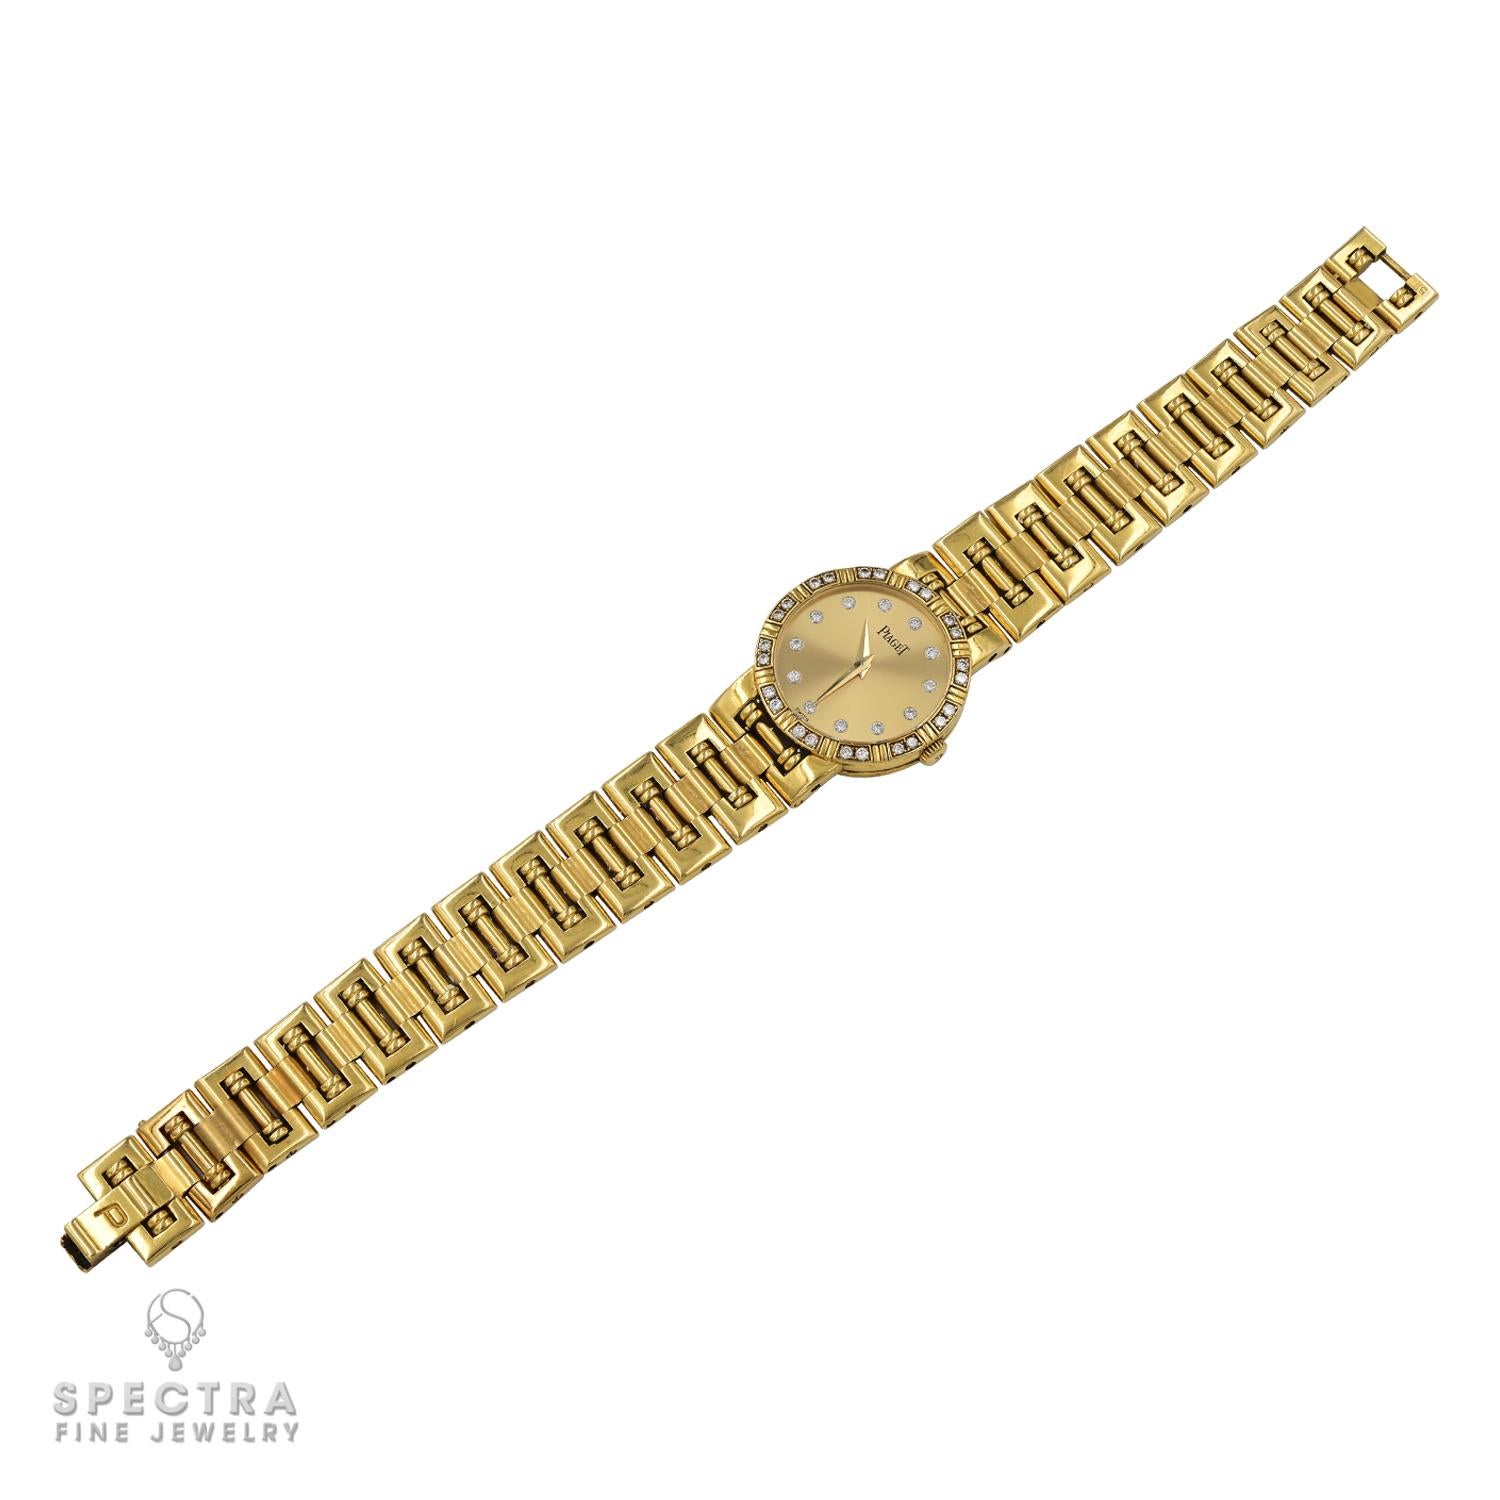 Gönnen Sie sich den Inbegriff von Luxus mit diesem exquisiten Zeitmesser aus dem geschätzten Hause Piaget. Diese Uhr aus strahlendem 18-karätigem Gelbgold strahlt bei jedem Blick Opulenz aus. Geschmückt mit einer Lünette, die mit schimmernden